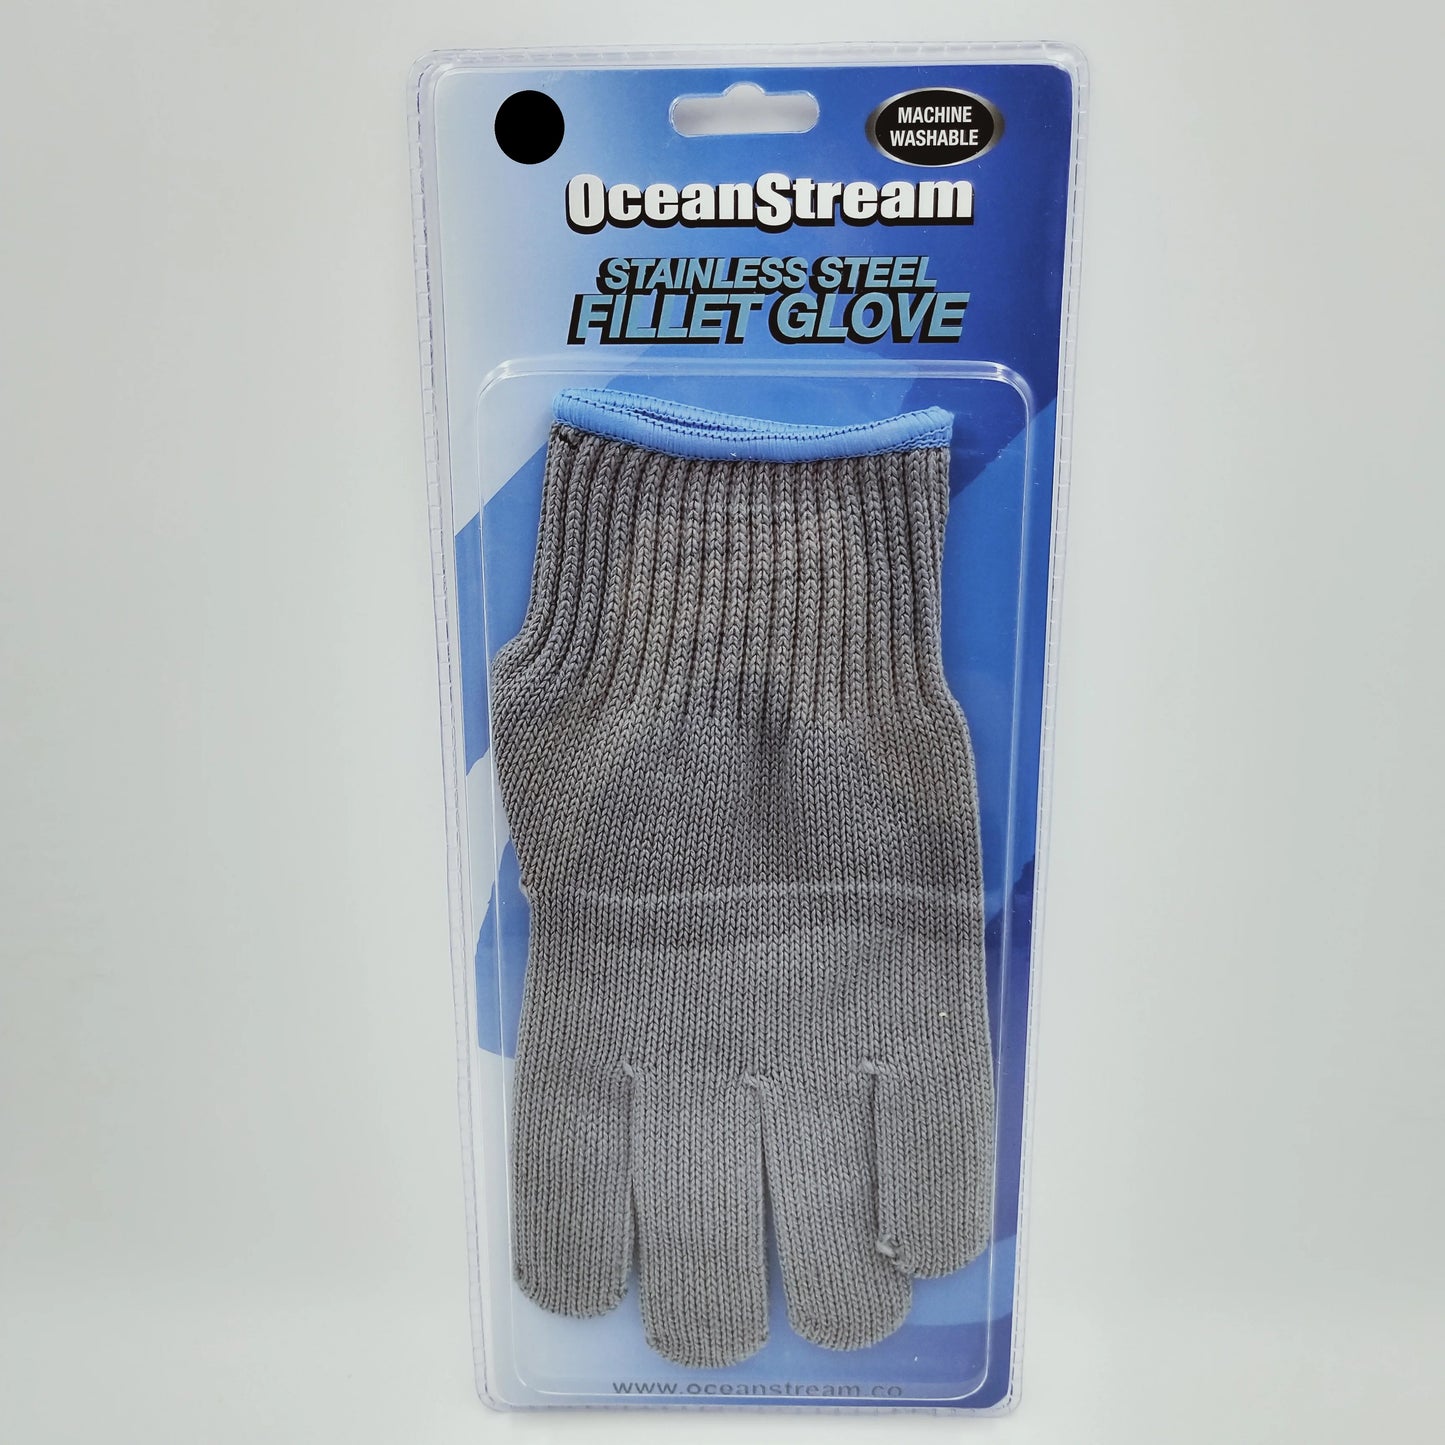 Glove - Oceanstream Stainless Steel Fillet Glove